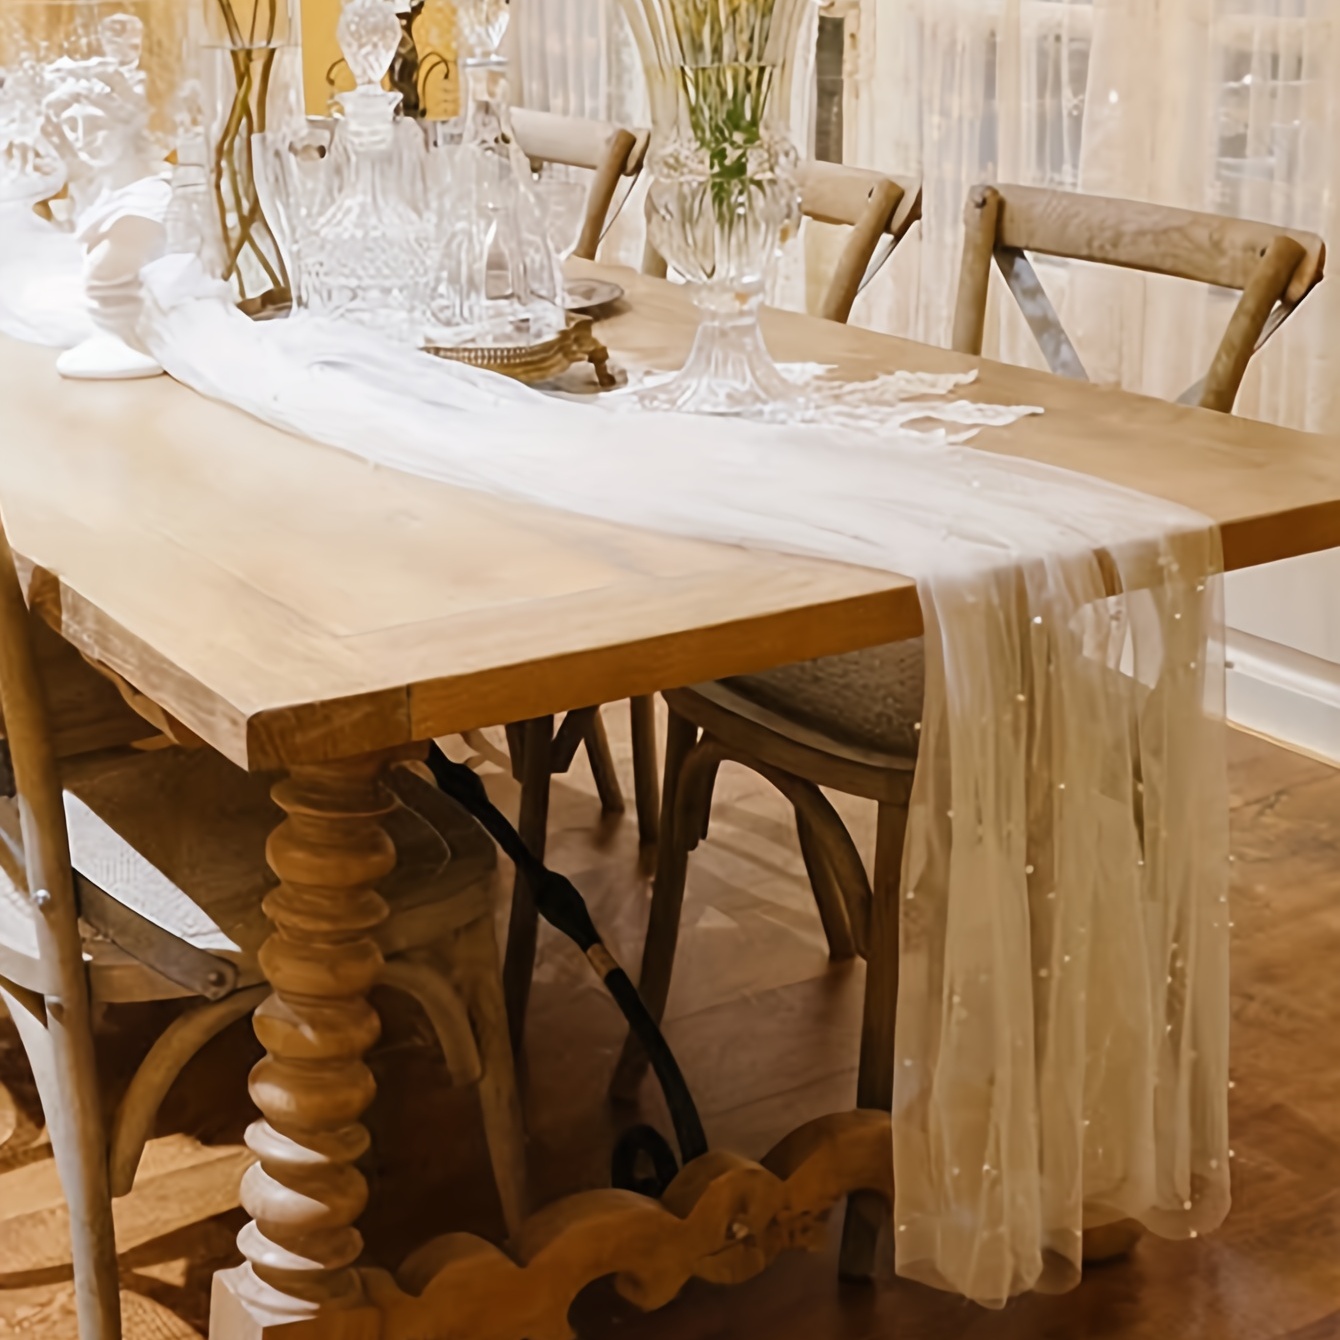  Camino de mesa de comedor para el hogar, cocina, camino de mesa  simple, moderno, a rayas, mantel de mesa, mantel de mesa, mesa de comedor,  alfombra de decoración para bodas, despedidas